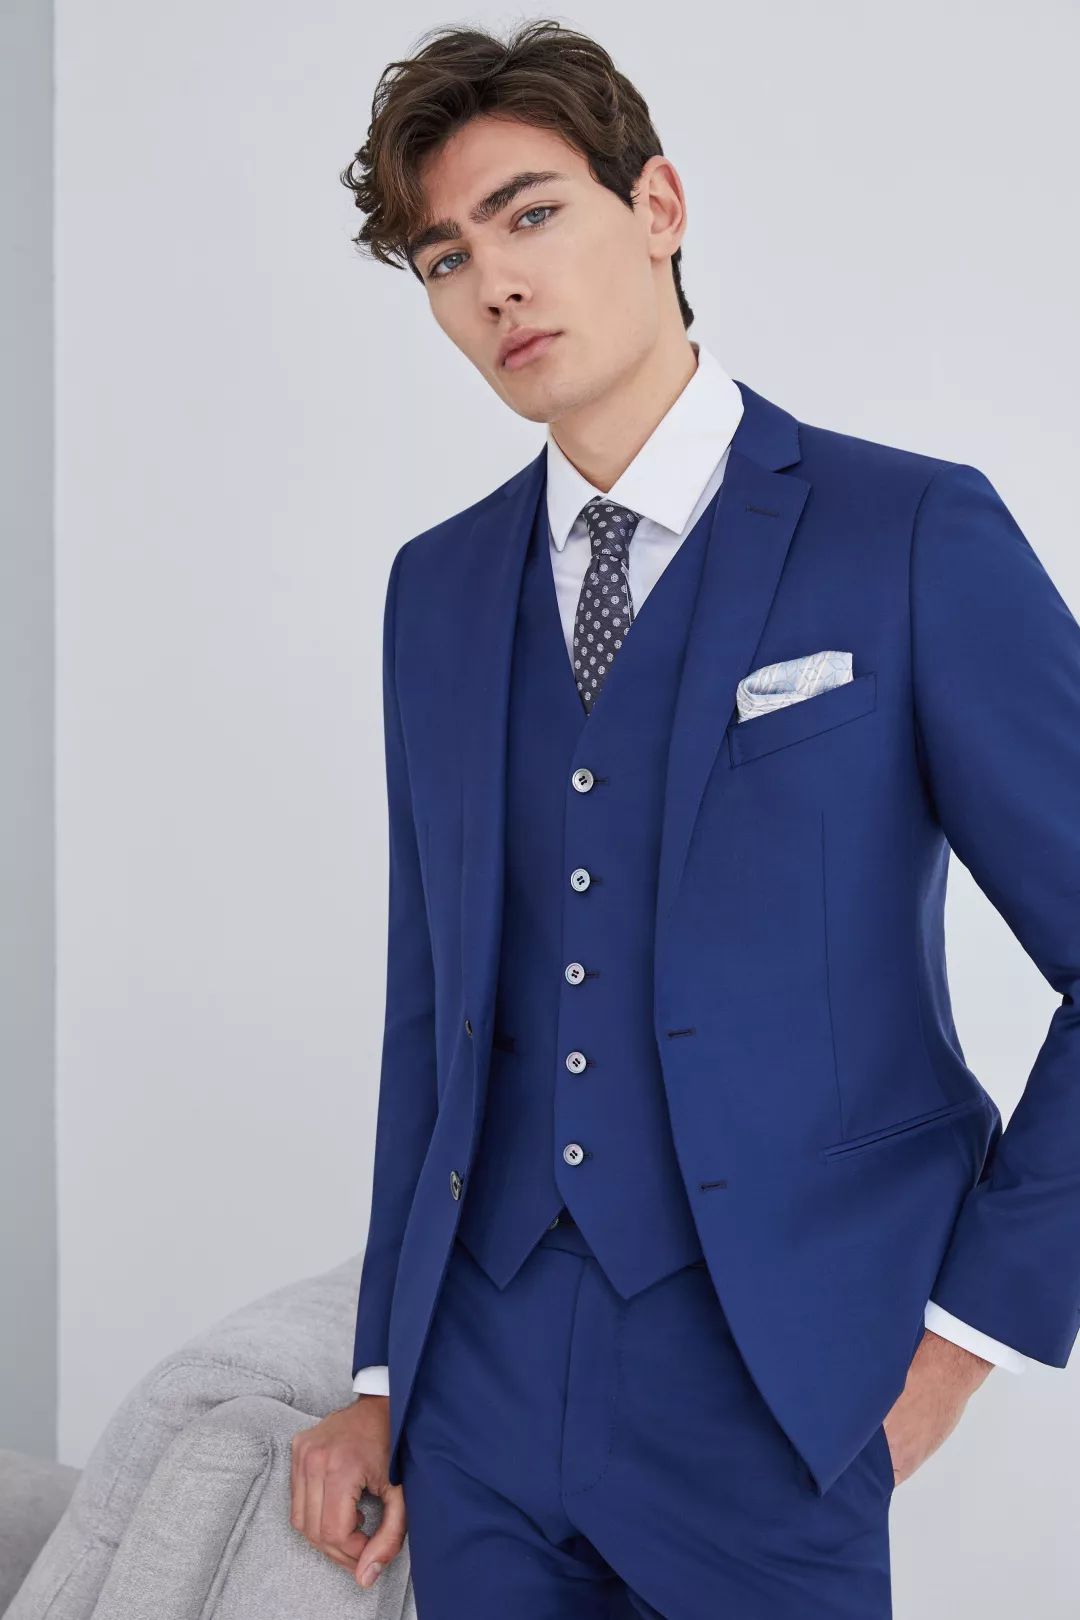 套装西服实现造型的协调美感 表现独特的个性与内涵经典宝蓝色套装